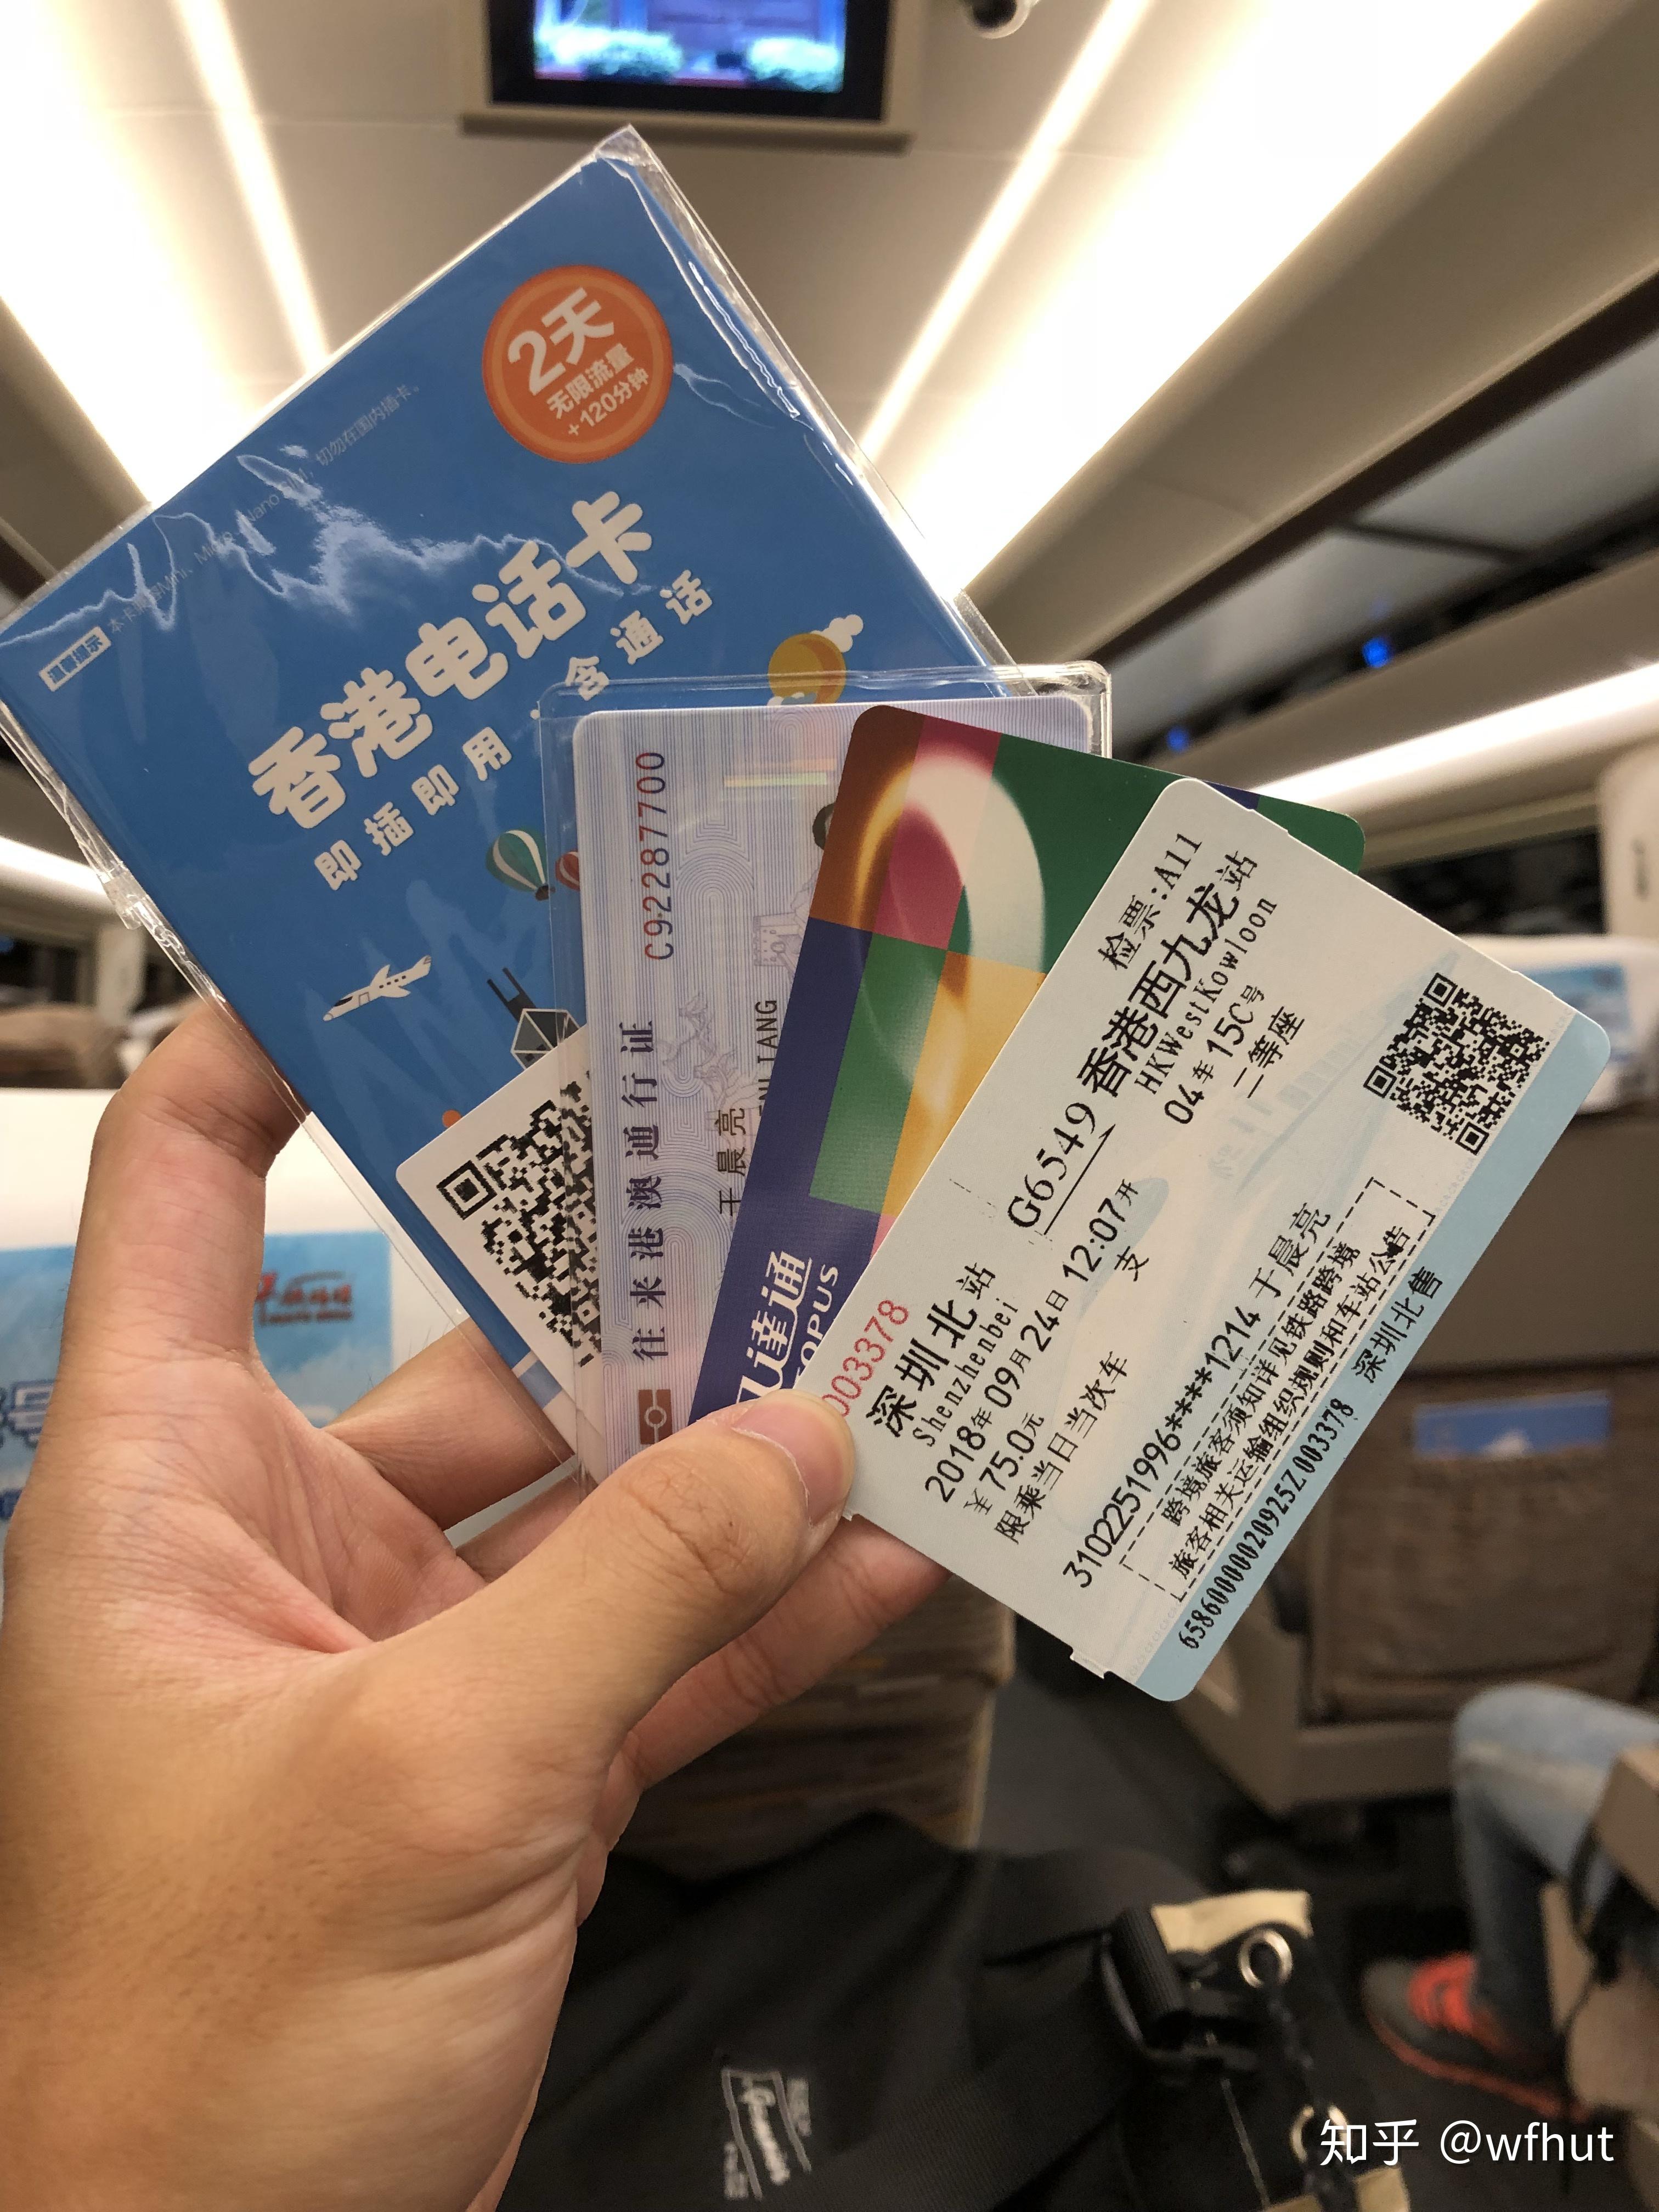 广深港高铁香港段于 2018 年 9 月 23 日通车,你